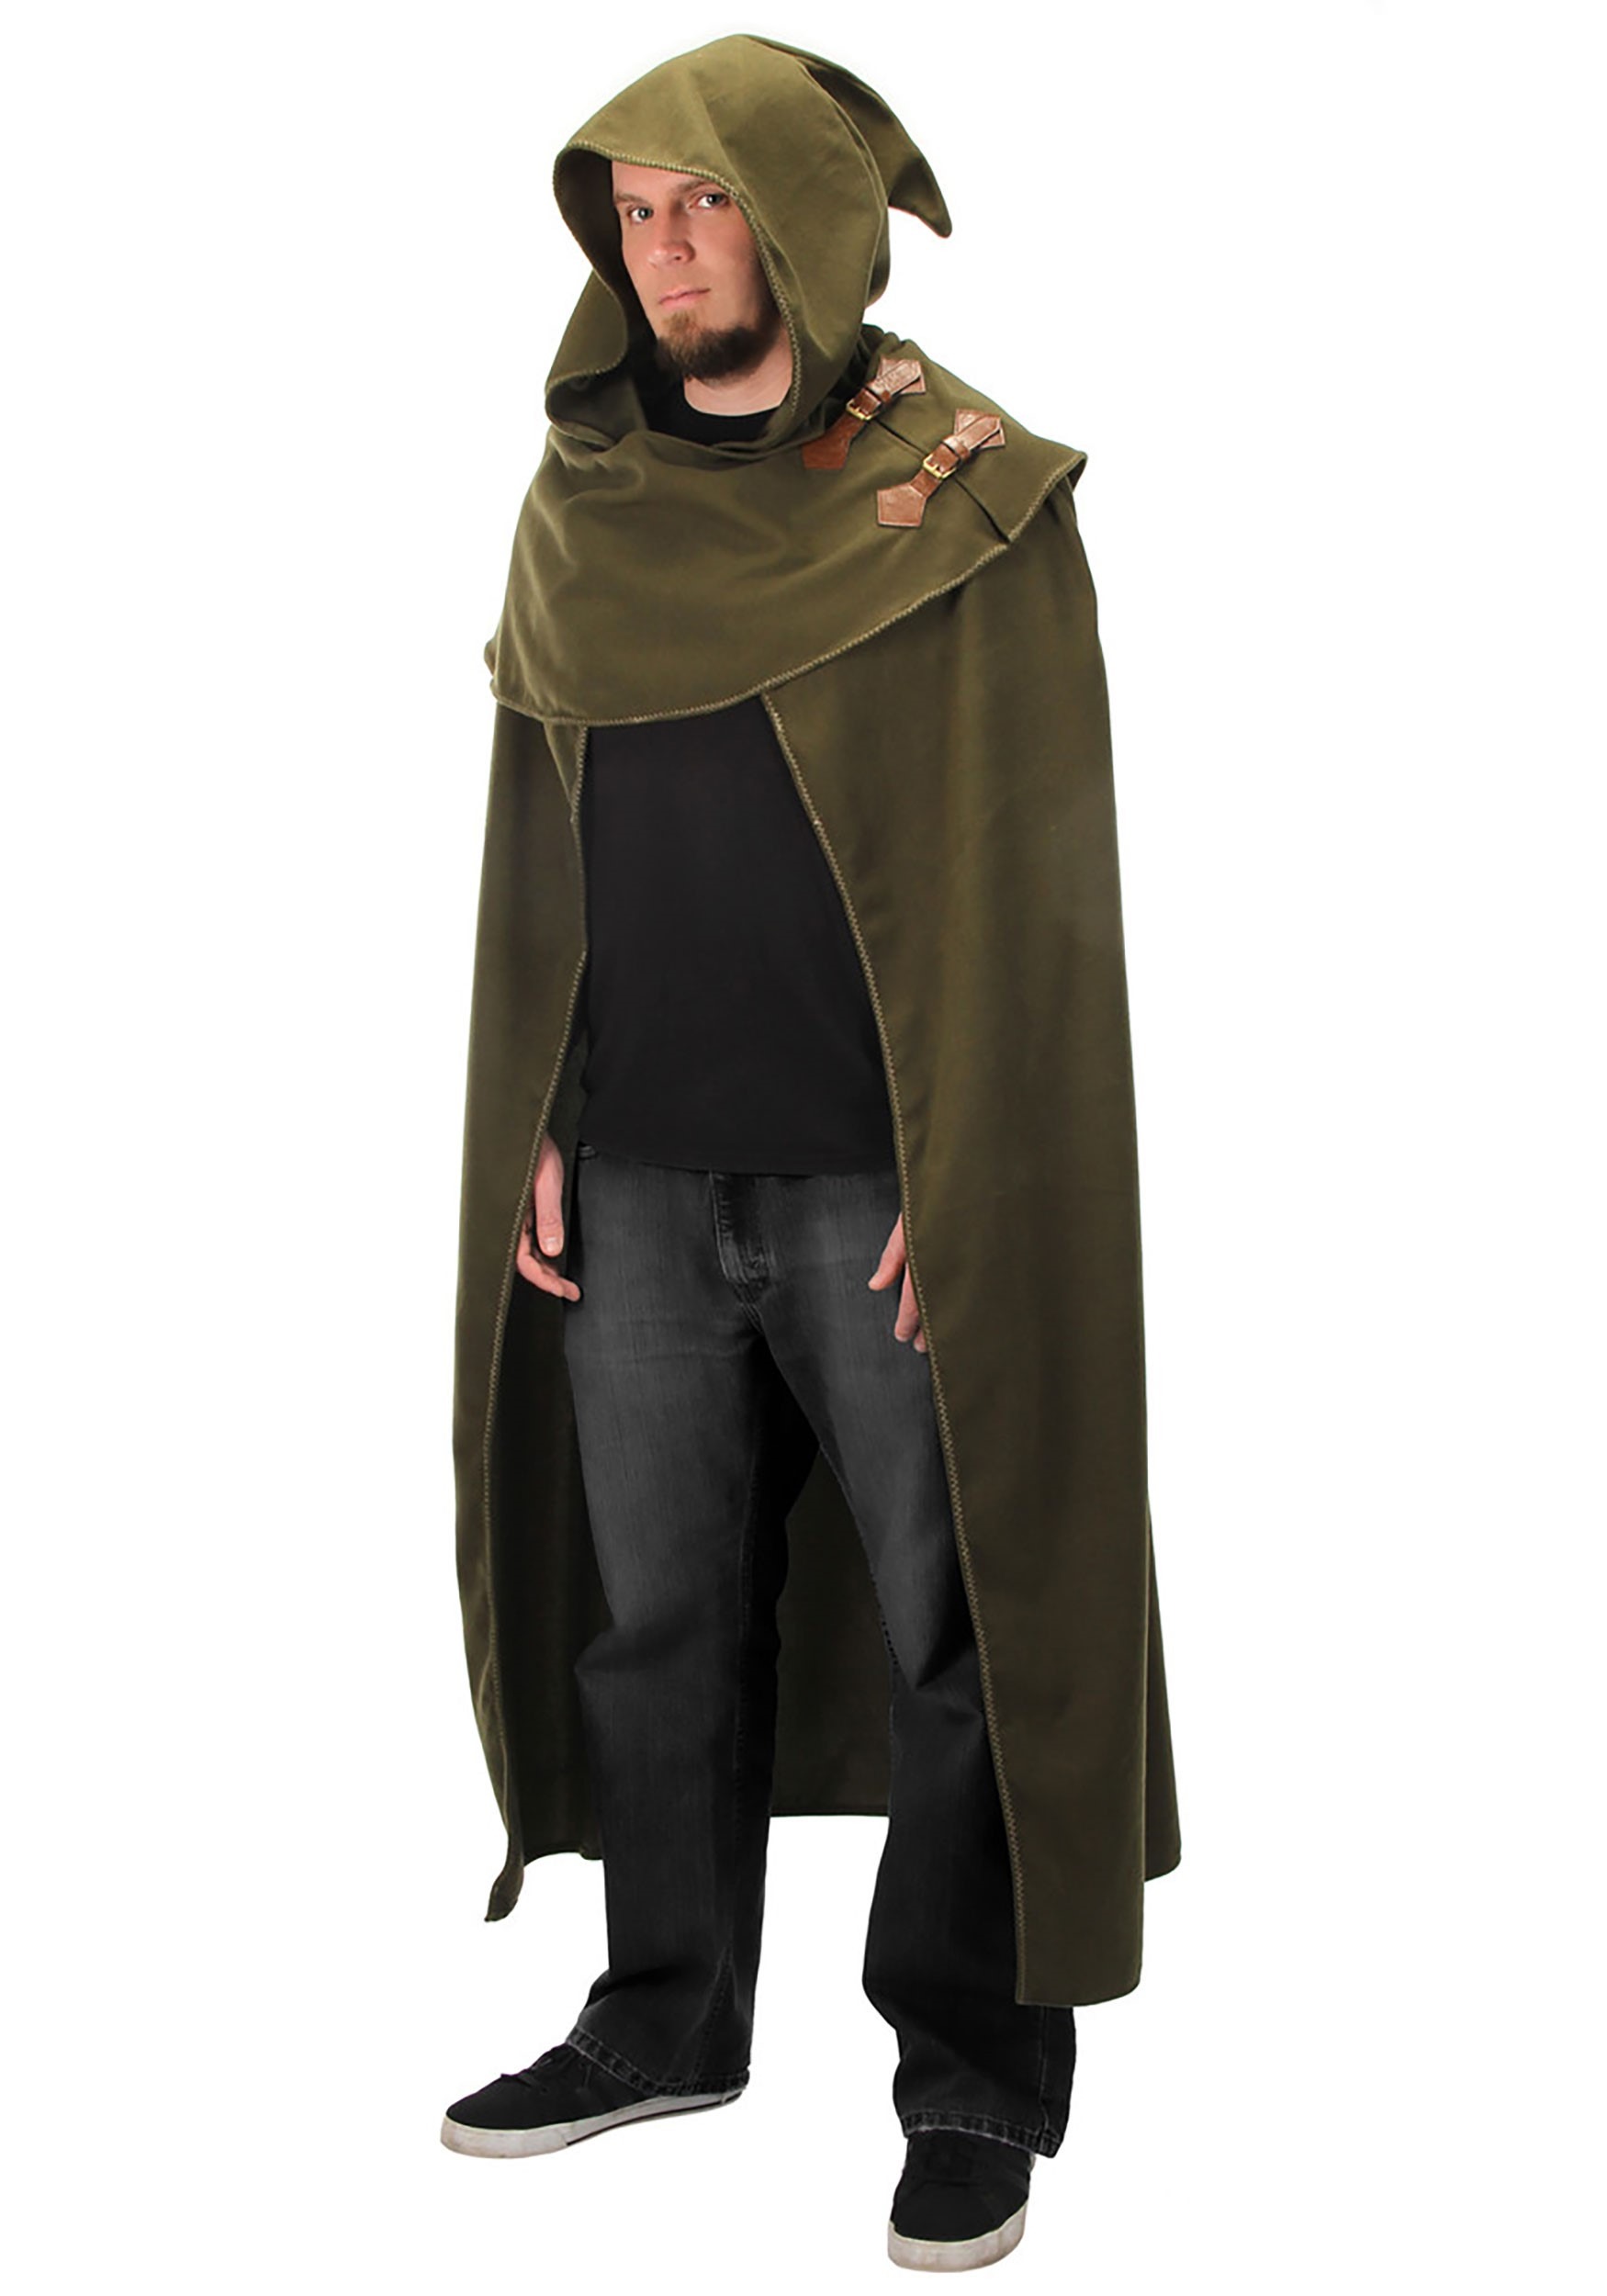 cloak costume